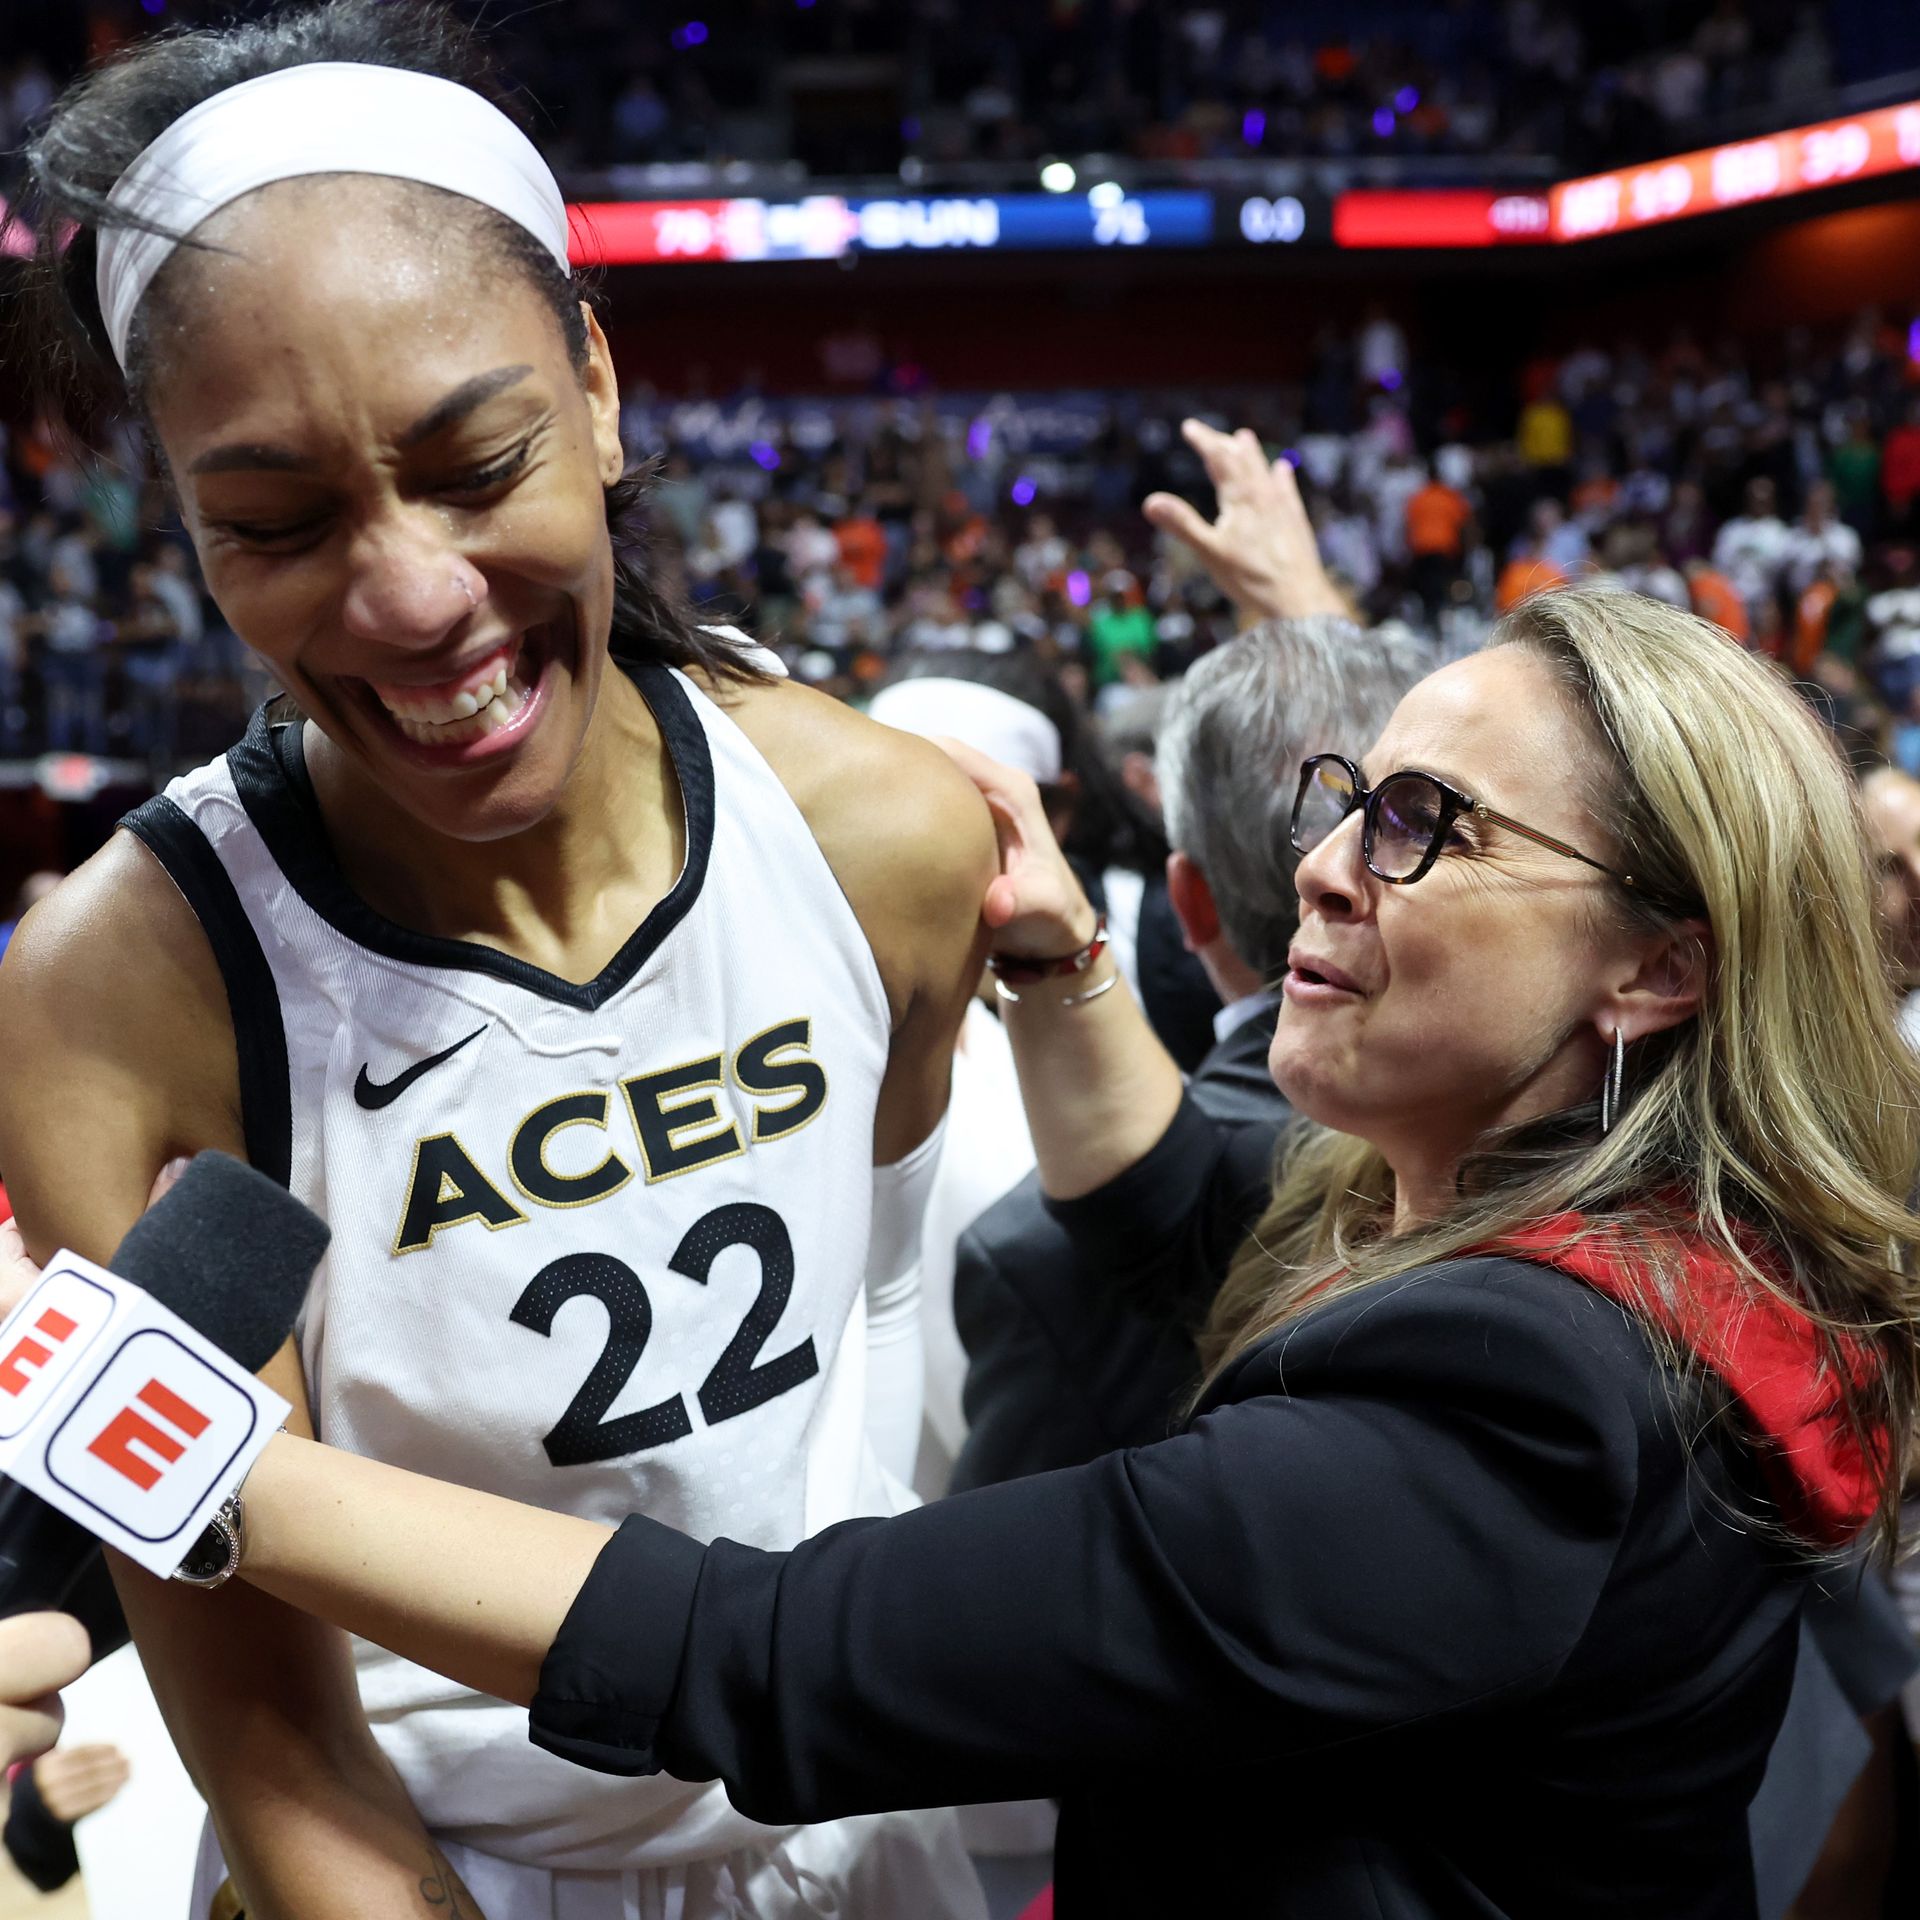 Las Vegas Aces capture first WNBA title